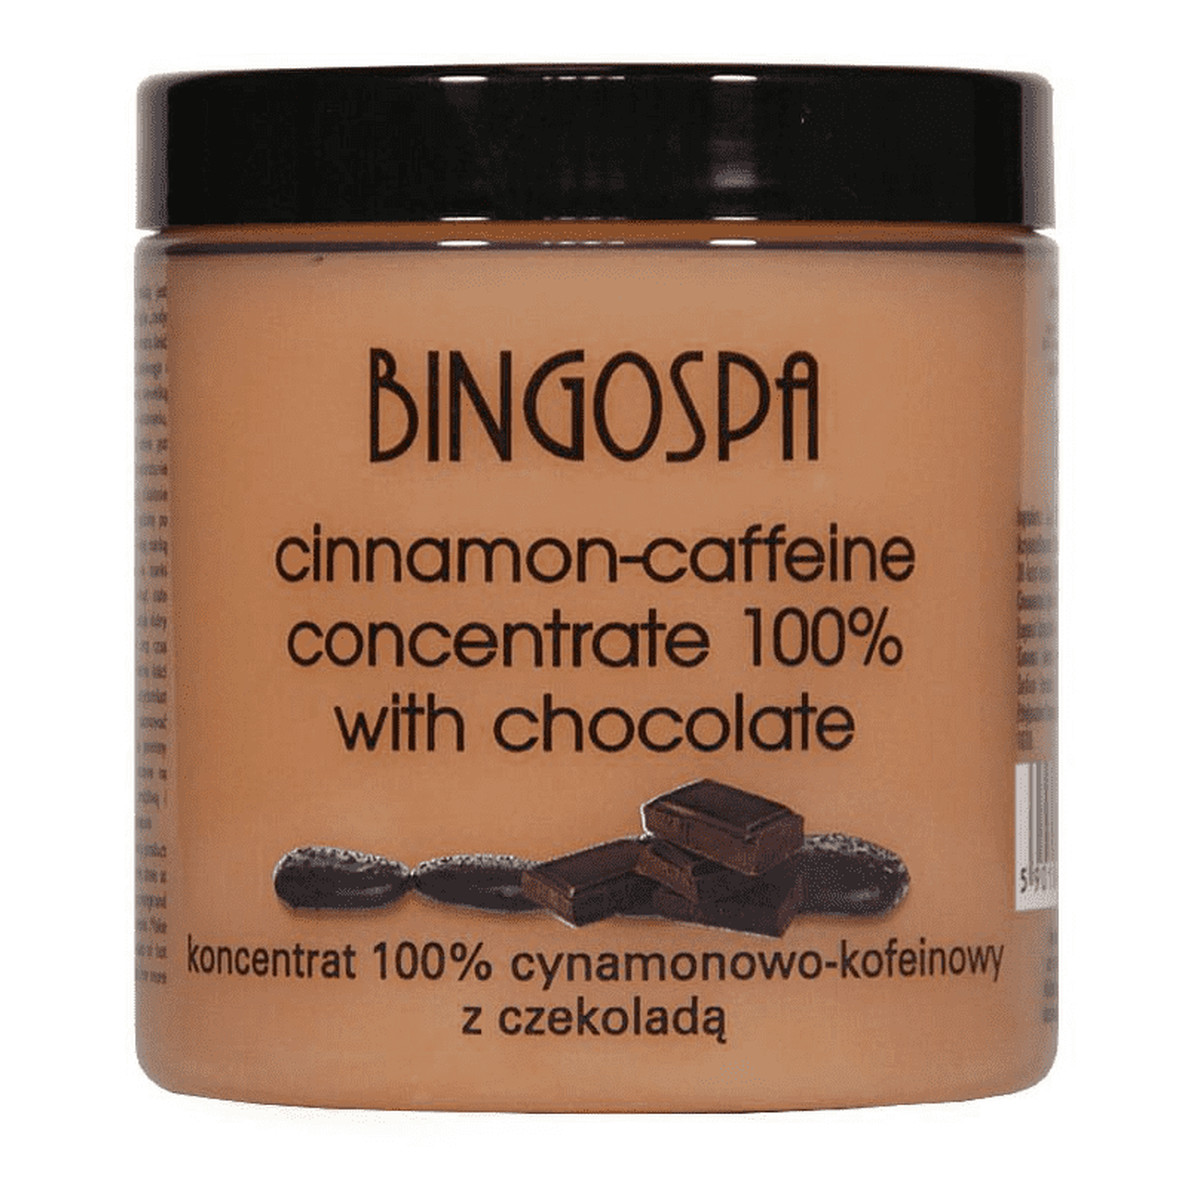 BingoSpa Koncentrat 100% cynamonowo-kofeinowy z czekoladą 250g